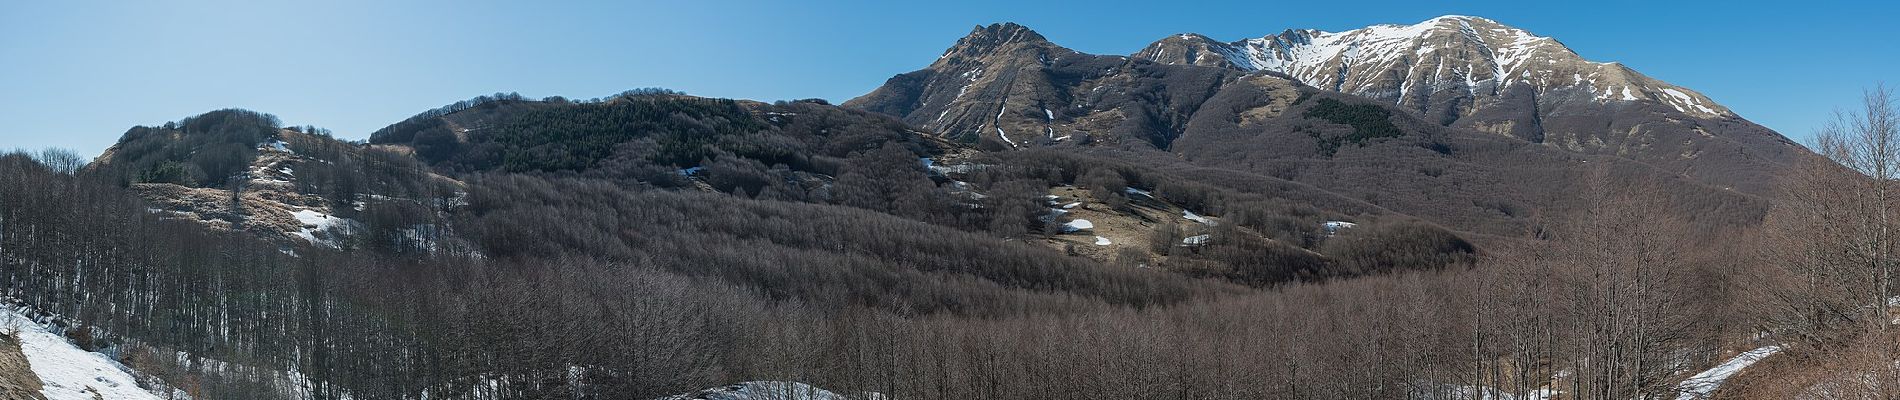 Percorso A piedi Fivizzano - (SI L20OLD) Passo del Cerreto - Rifugio Sarzana al Monte Acuto - Diga del Lagastrello - Pratospilla - Photo